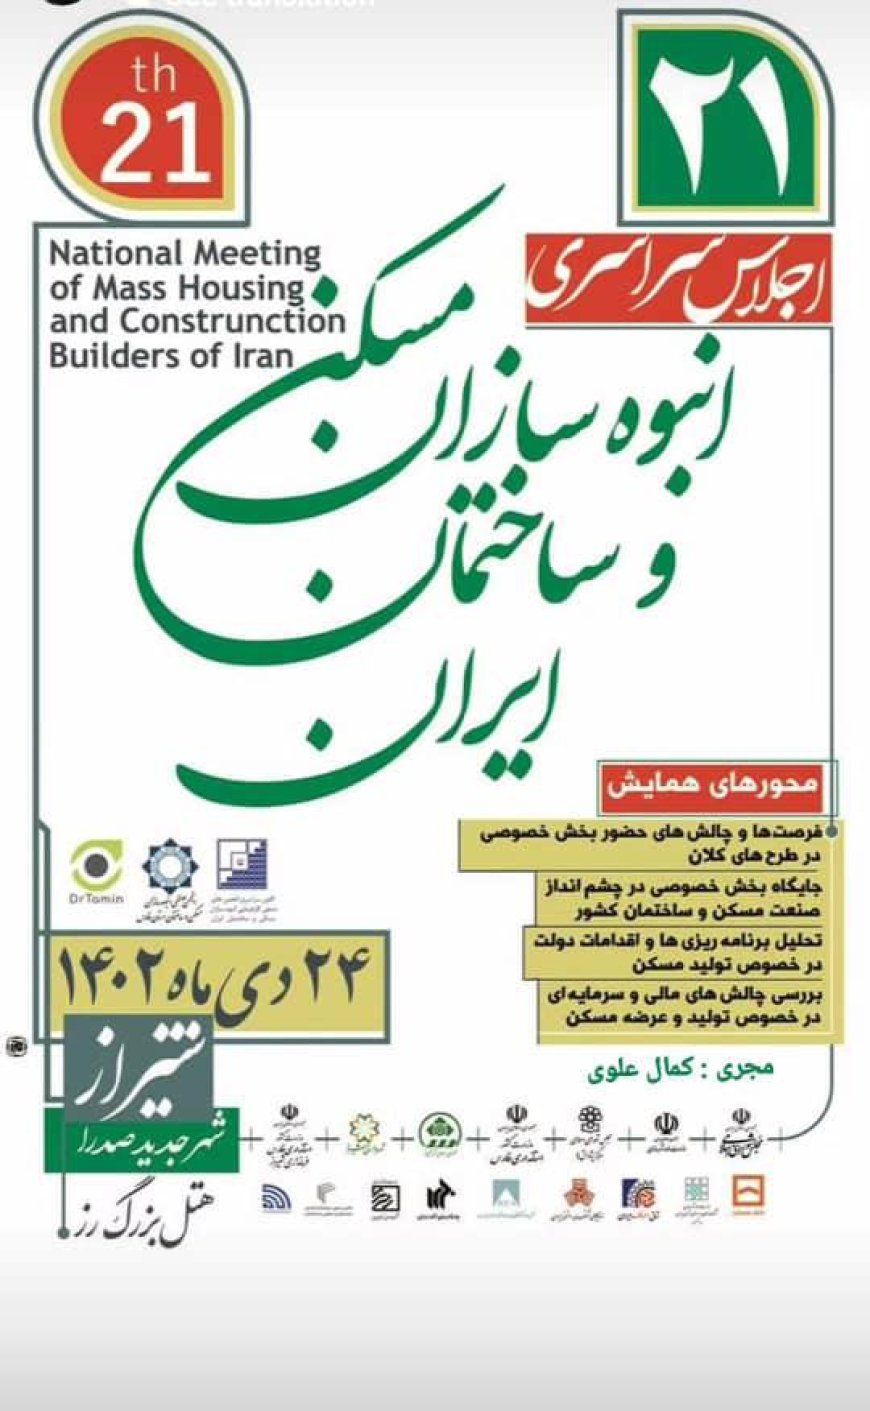 بیست و یکمین اجلاس سراسری انبوه سازان مسکن و ساختمان ایران در شیراز